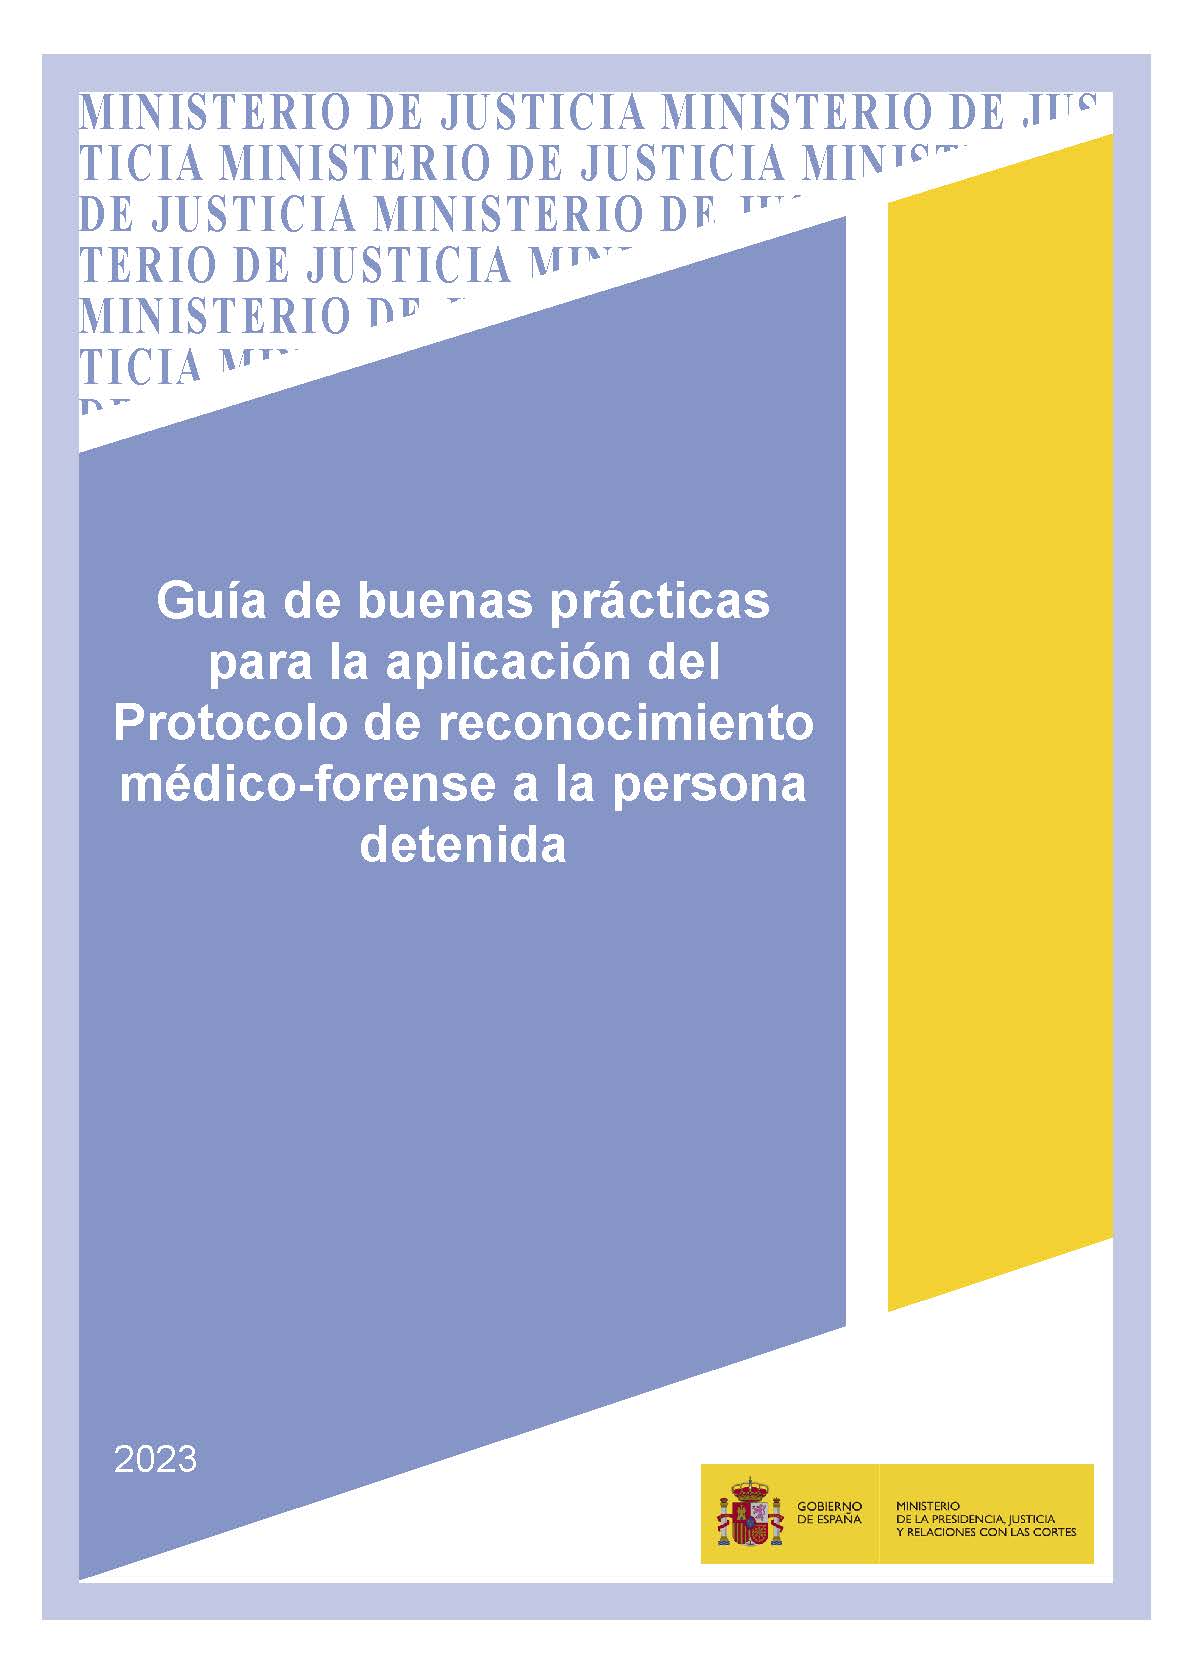 View details of Guía de buenas prácticas para la aplicación del protocolo de reconocimiento médico-forense a la persona detenida